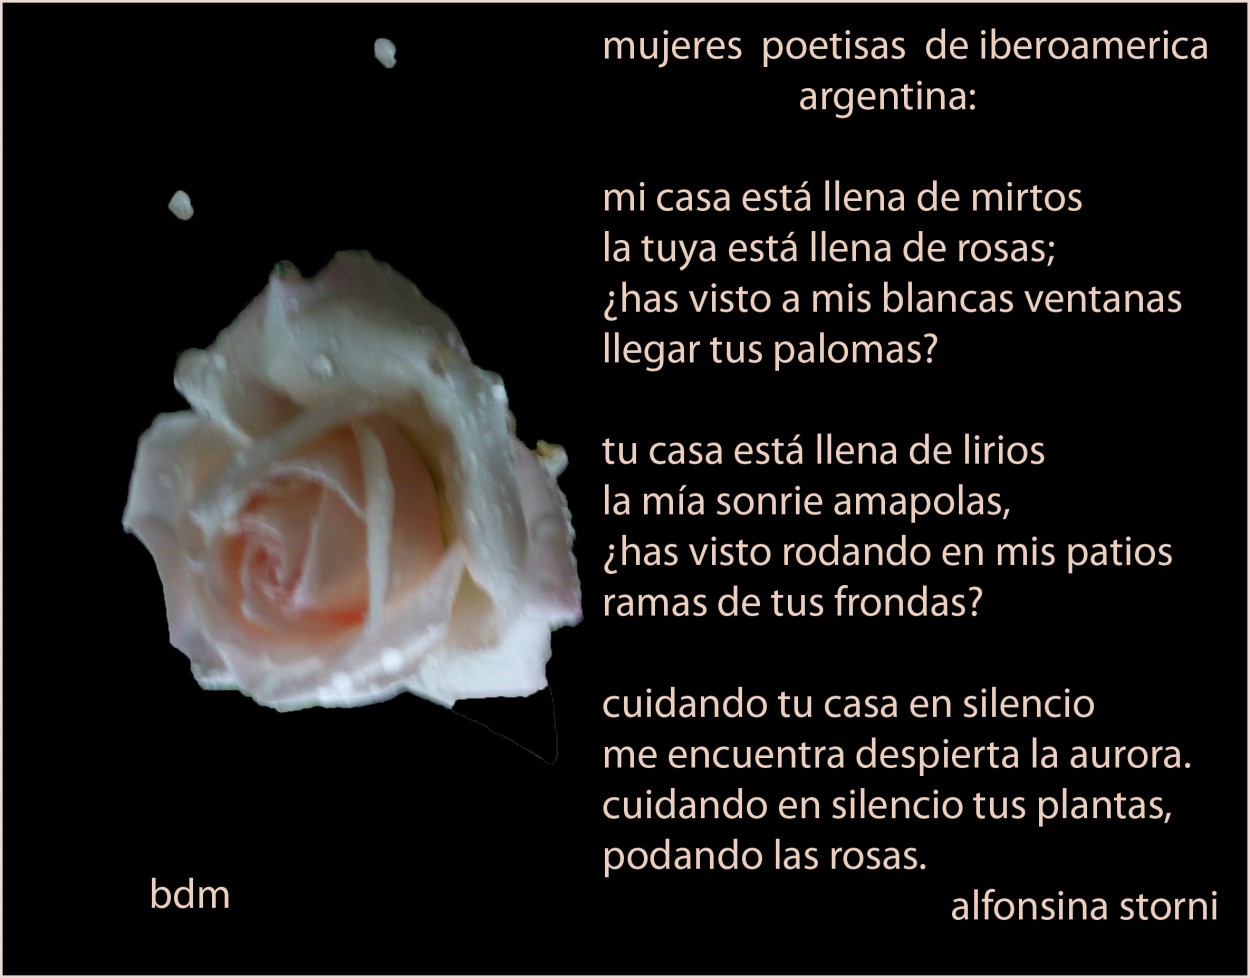 "poetisas de america:alfonsina storni" de Beatriz Di Marzio